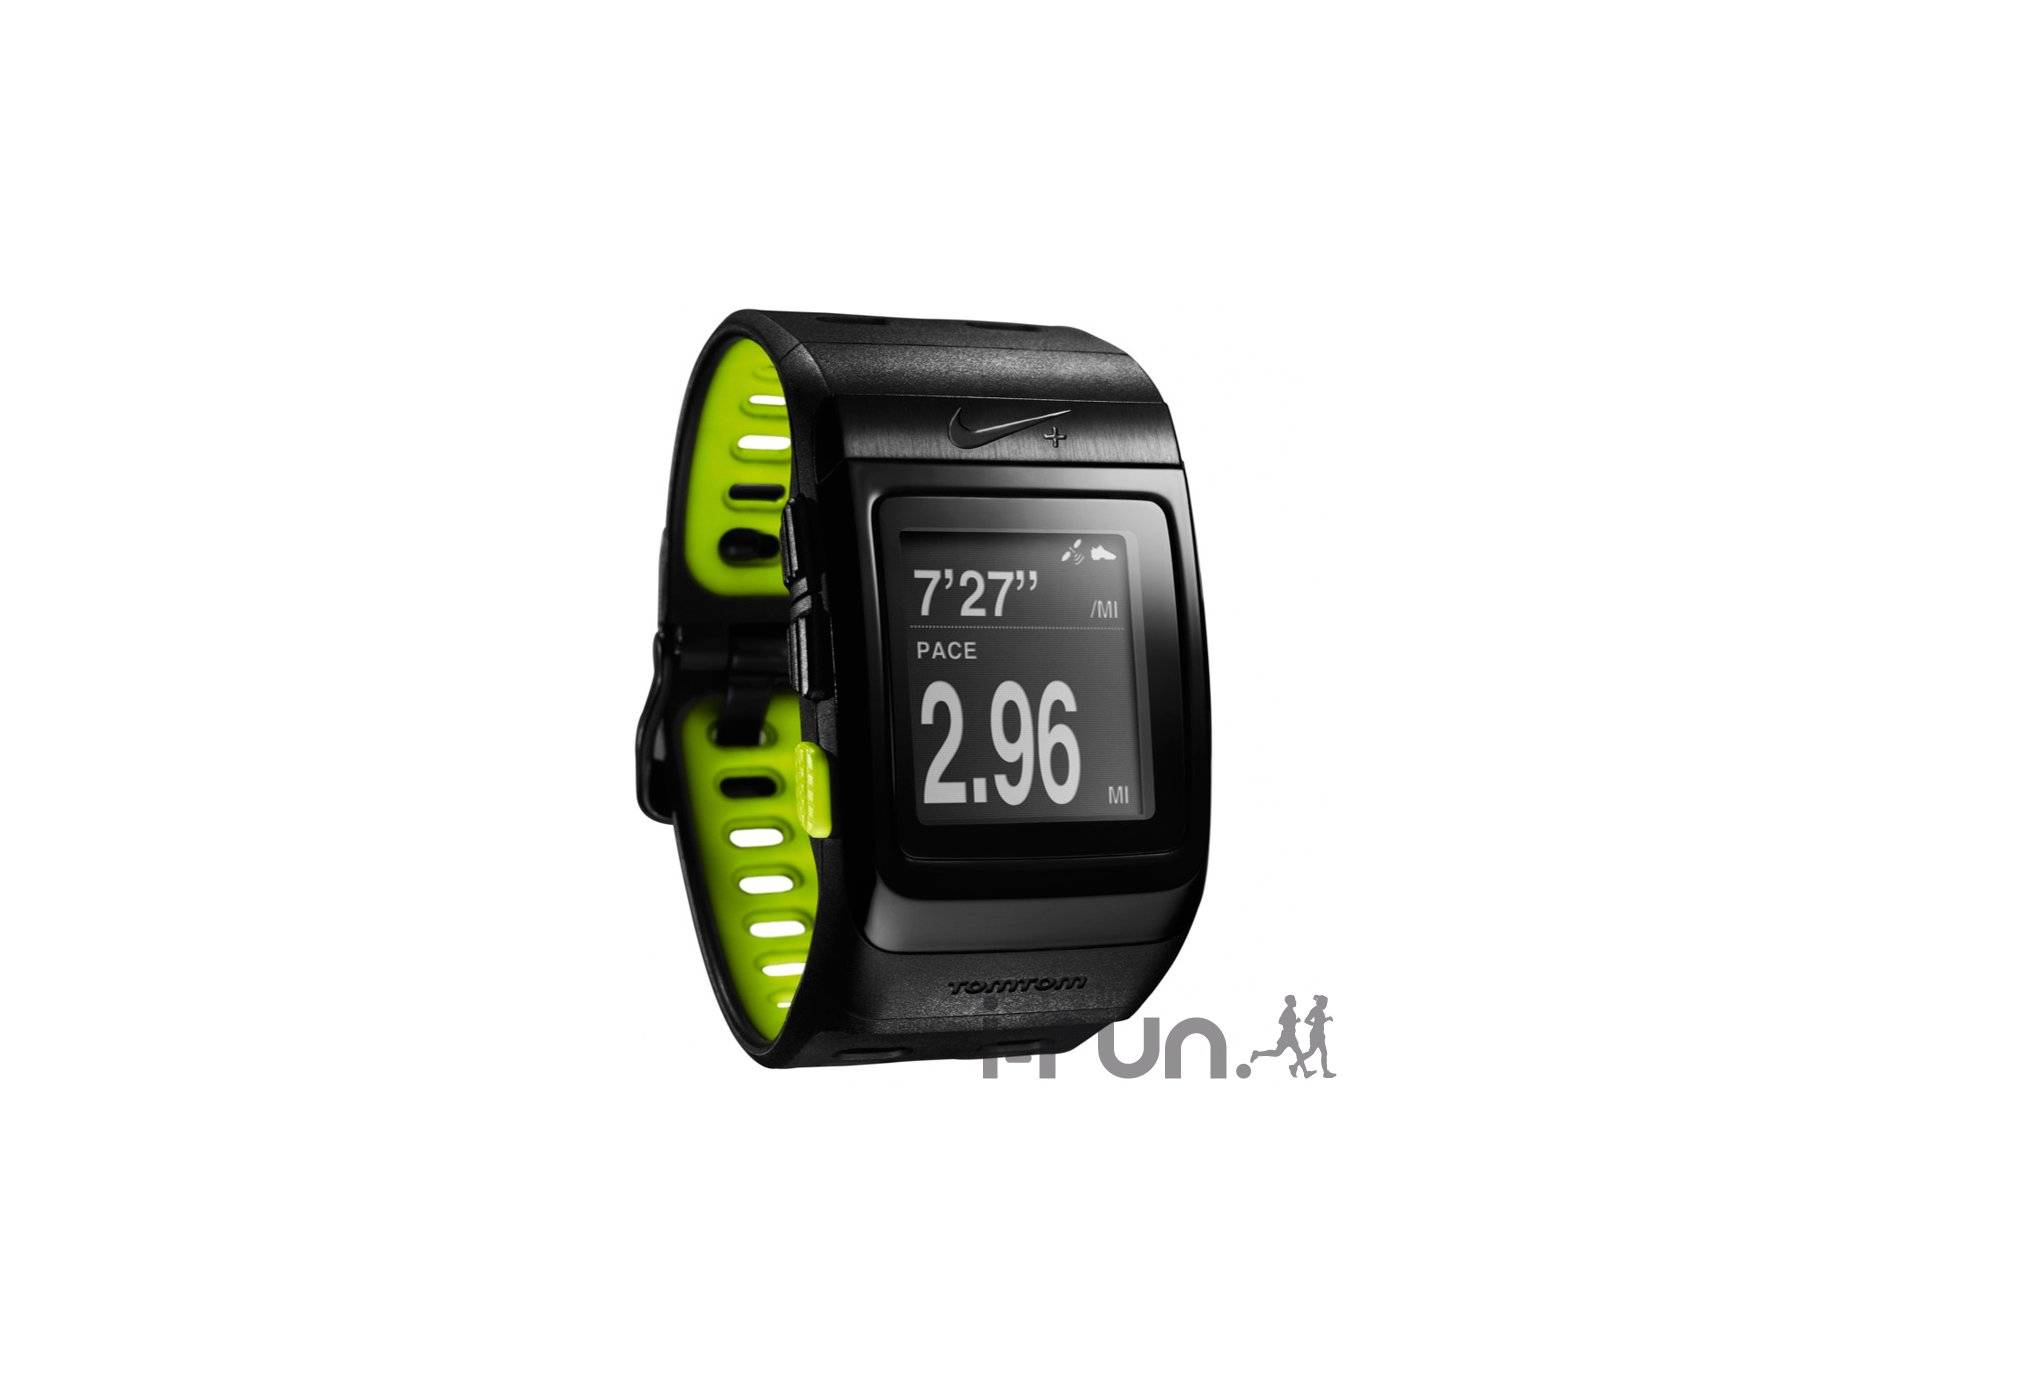 Nike SportWatch GPS Nike+ tomtom 